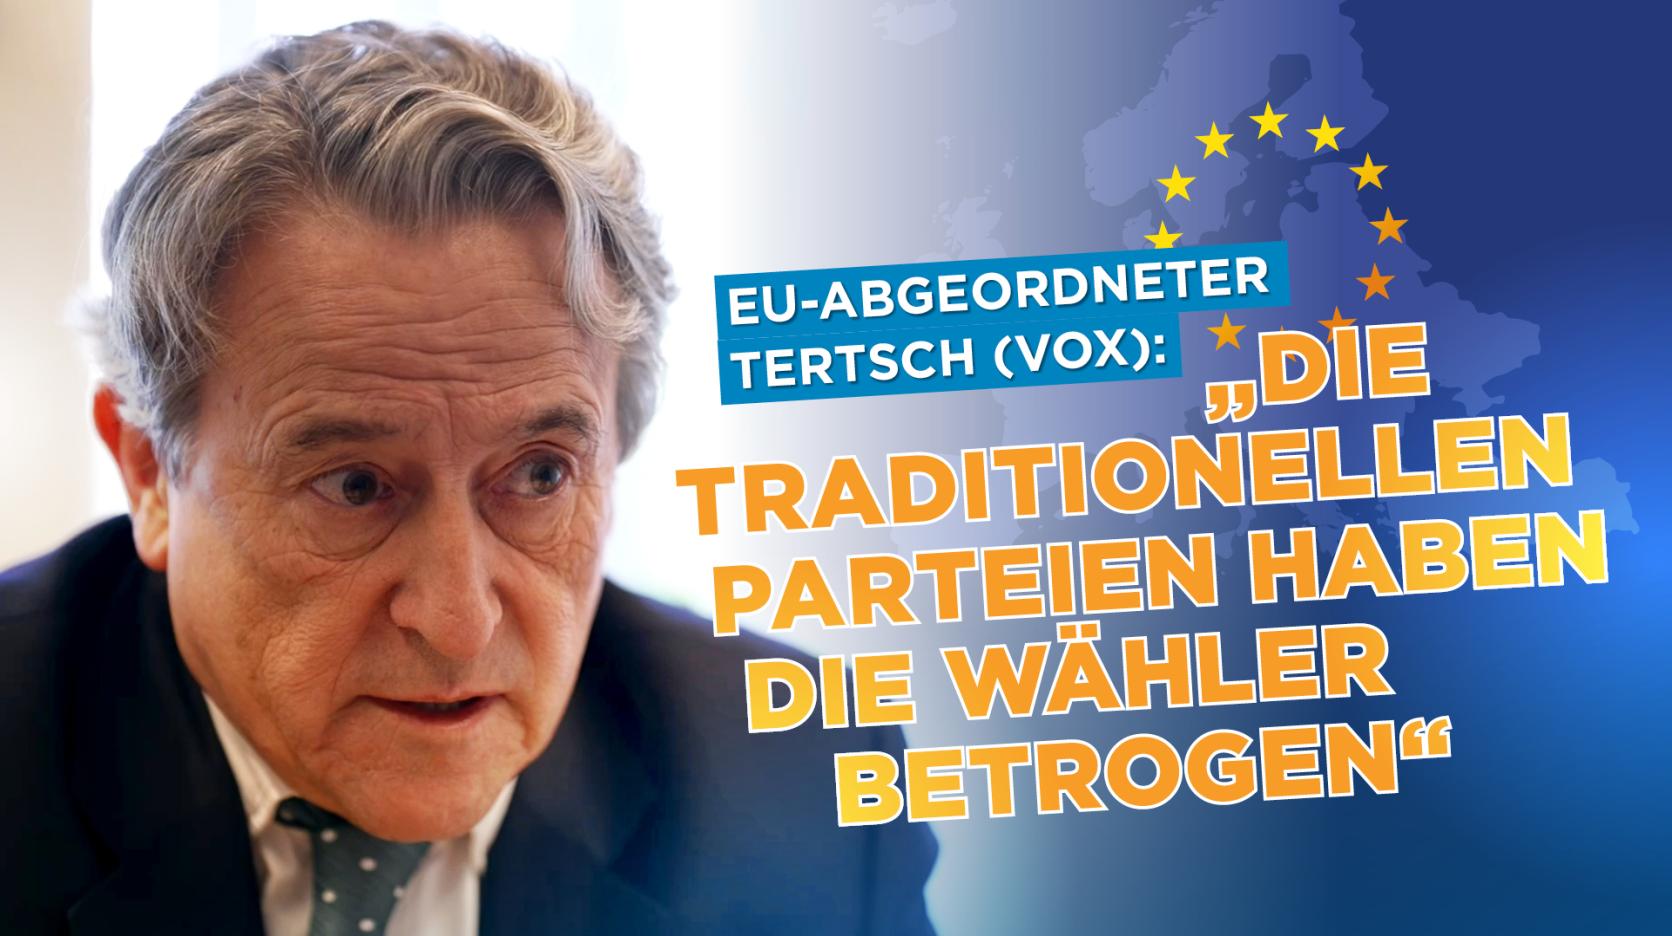 EU-Abgeordneter Tertsch (VOX): „Die traditionellen konservativen Parteien haben die Wählerschaft bet